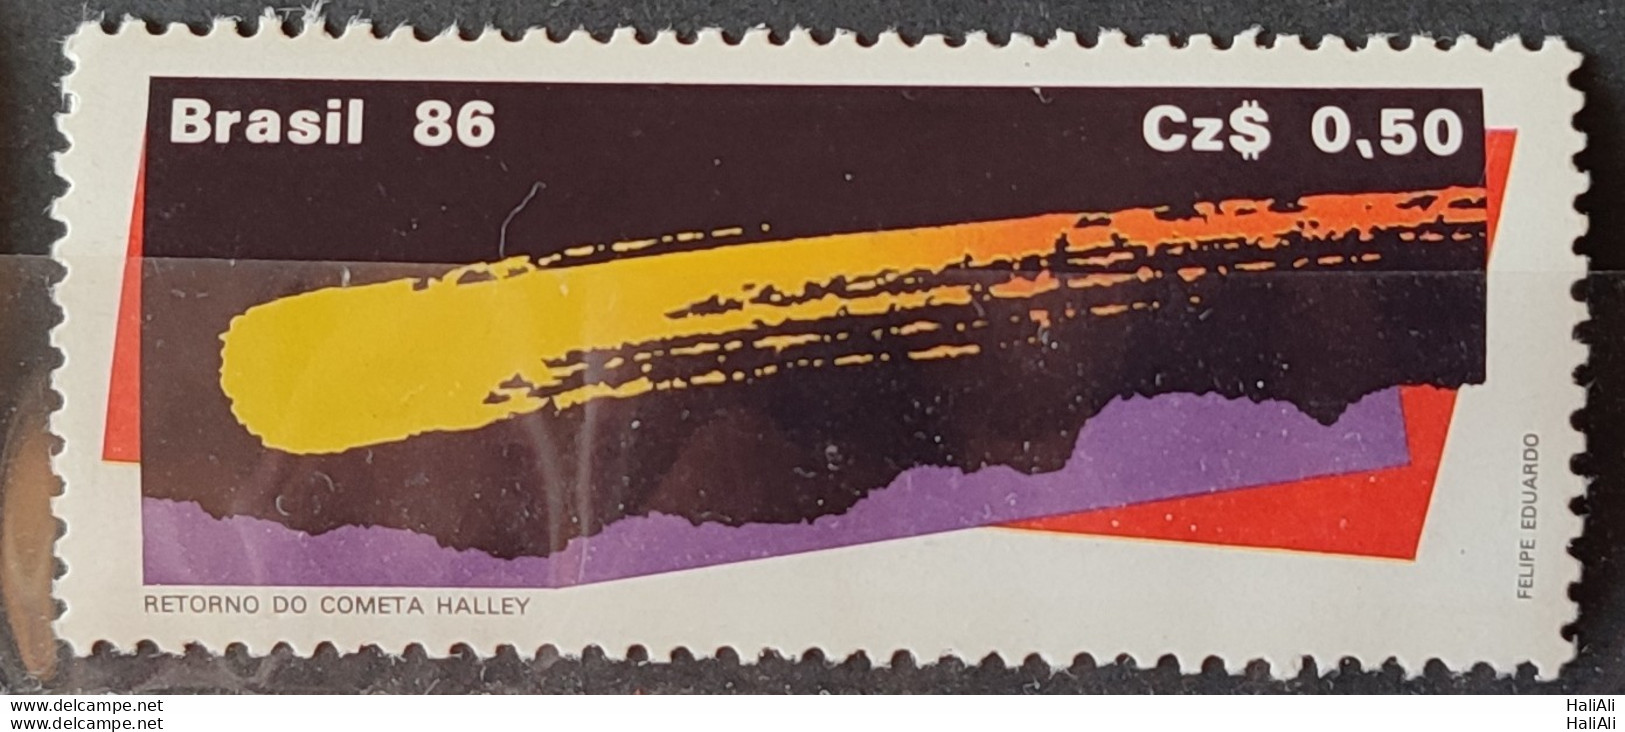 C 1507 Brazil Stamp Comet Halley Astronomy 1986.jpg - Nuovi